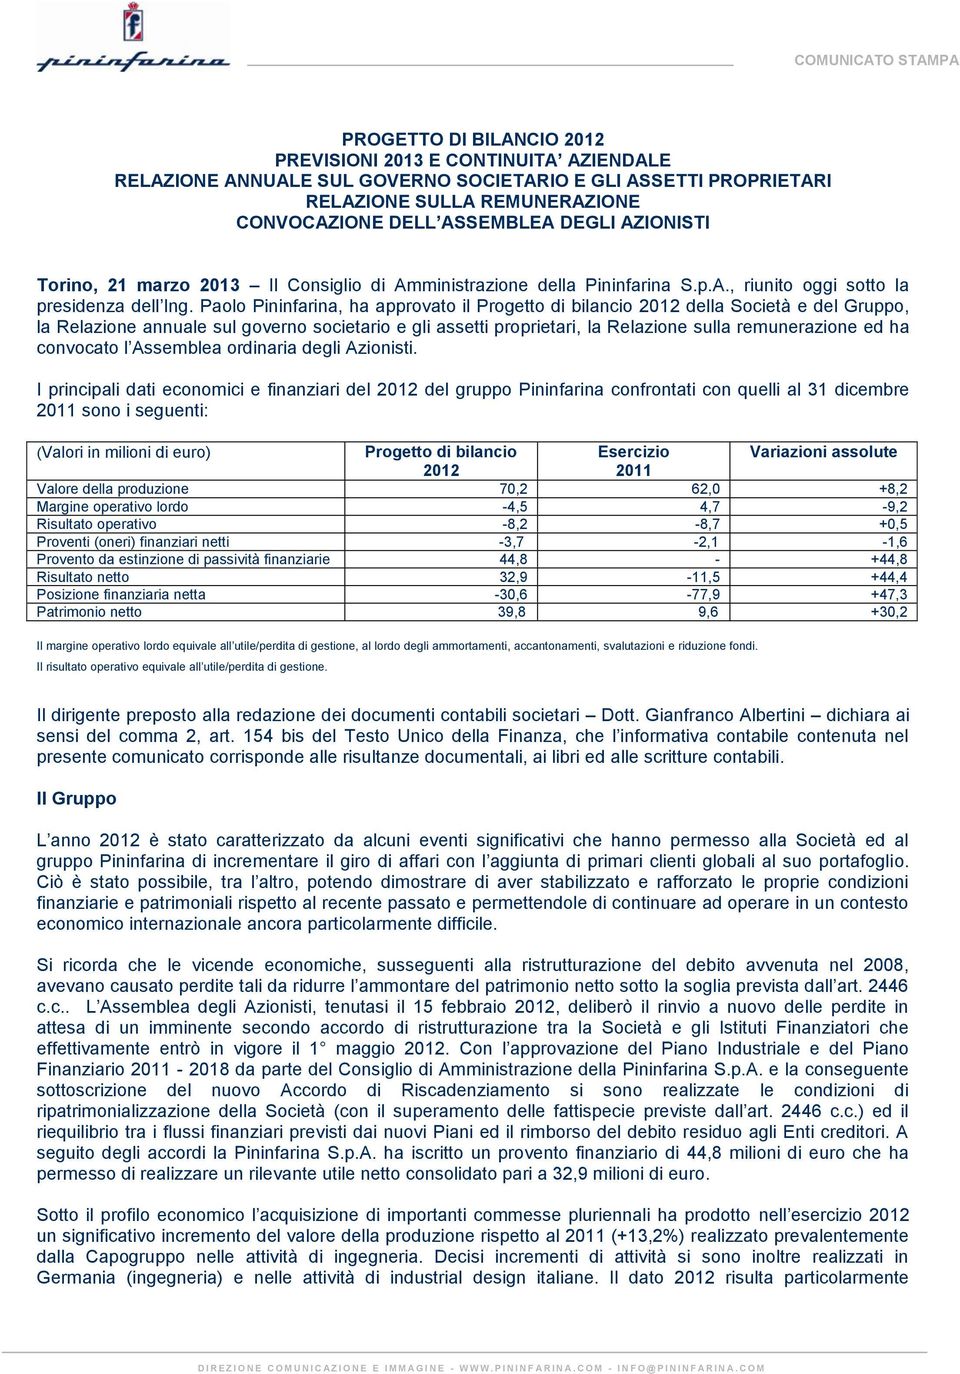 Paolo Pininfarina, ha approvato il Progetto di bilancio 2012 della Società e del Gruppo, la Relazione annuale sul governo societario e gli assetti proprietari, la Relazione sulla remunerazione ed ha